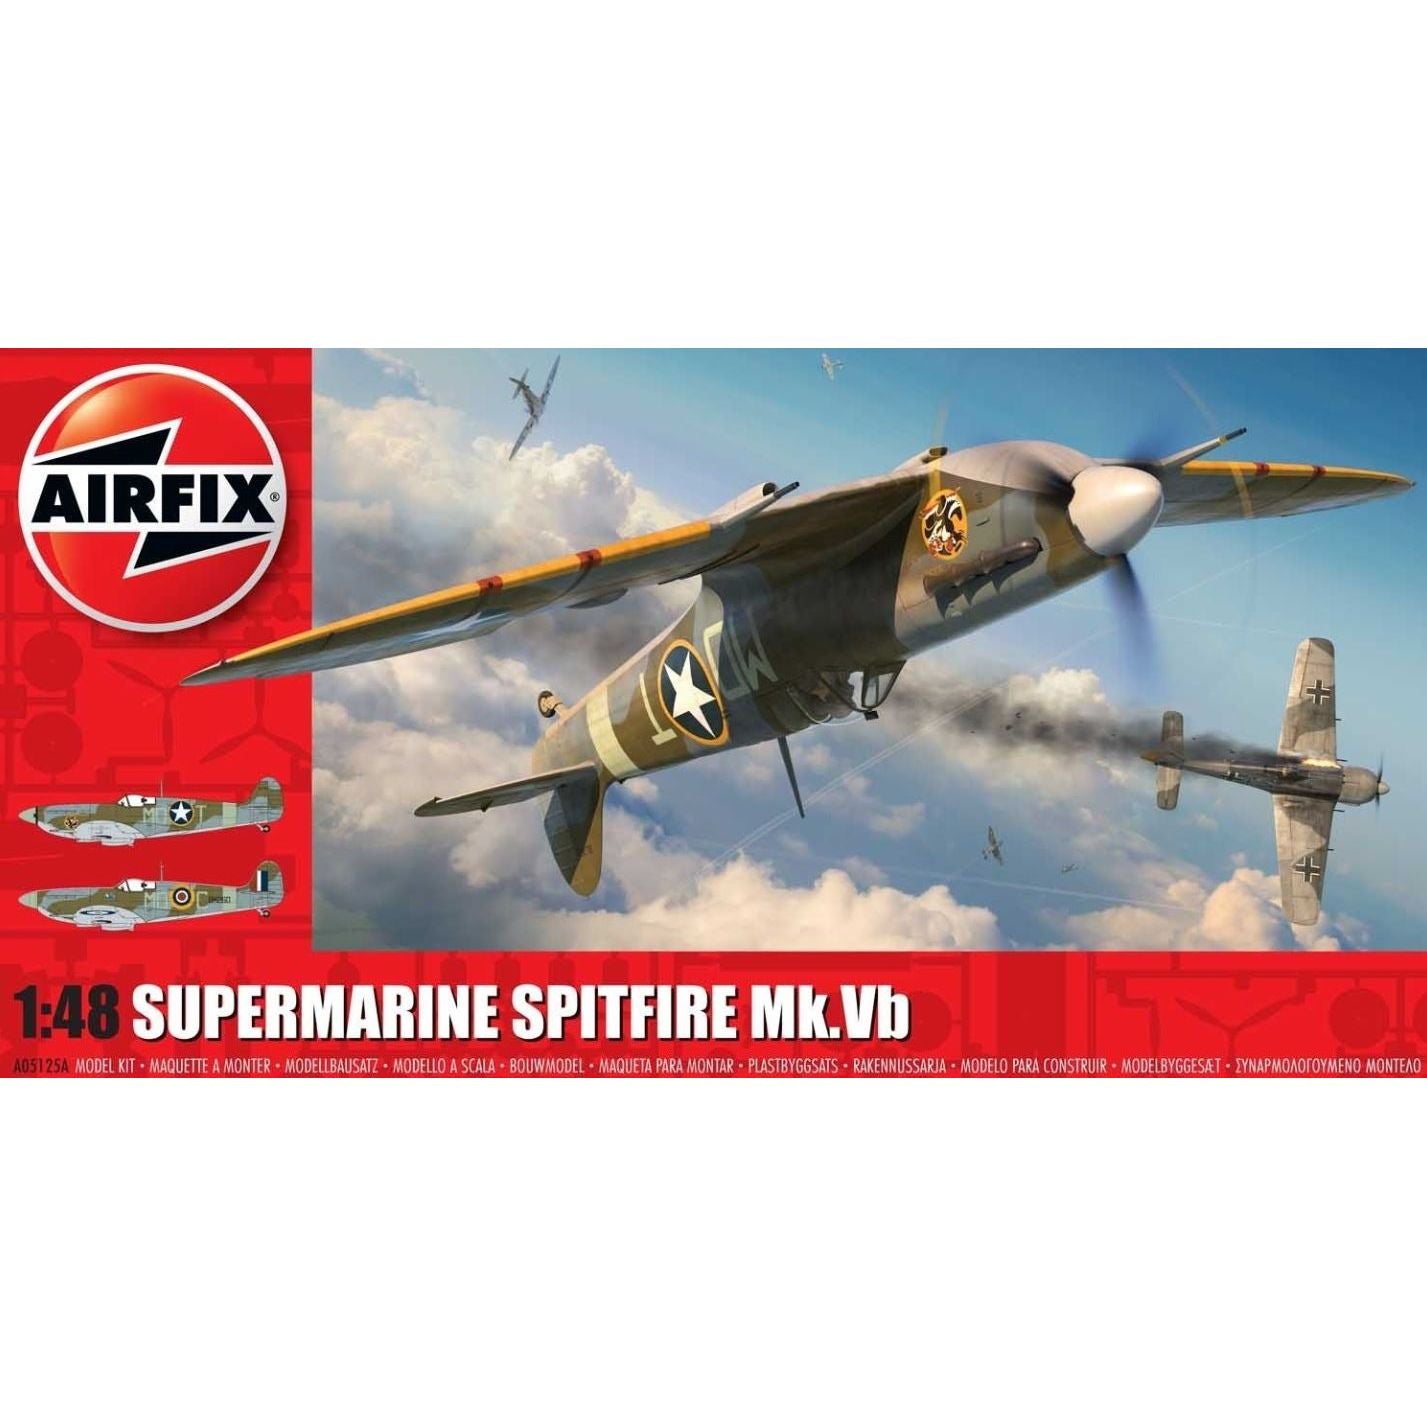 A05125A Airfix 1/48 Supermarine Spitfire Mk Vb